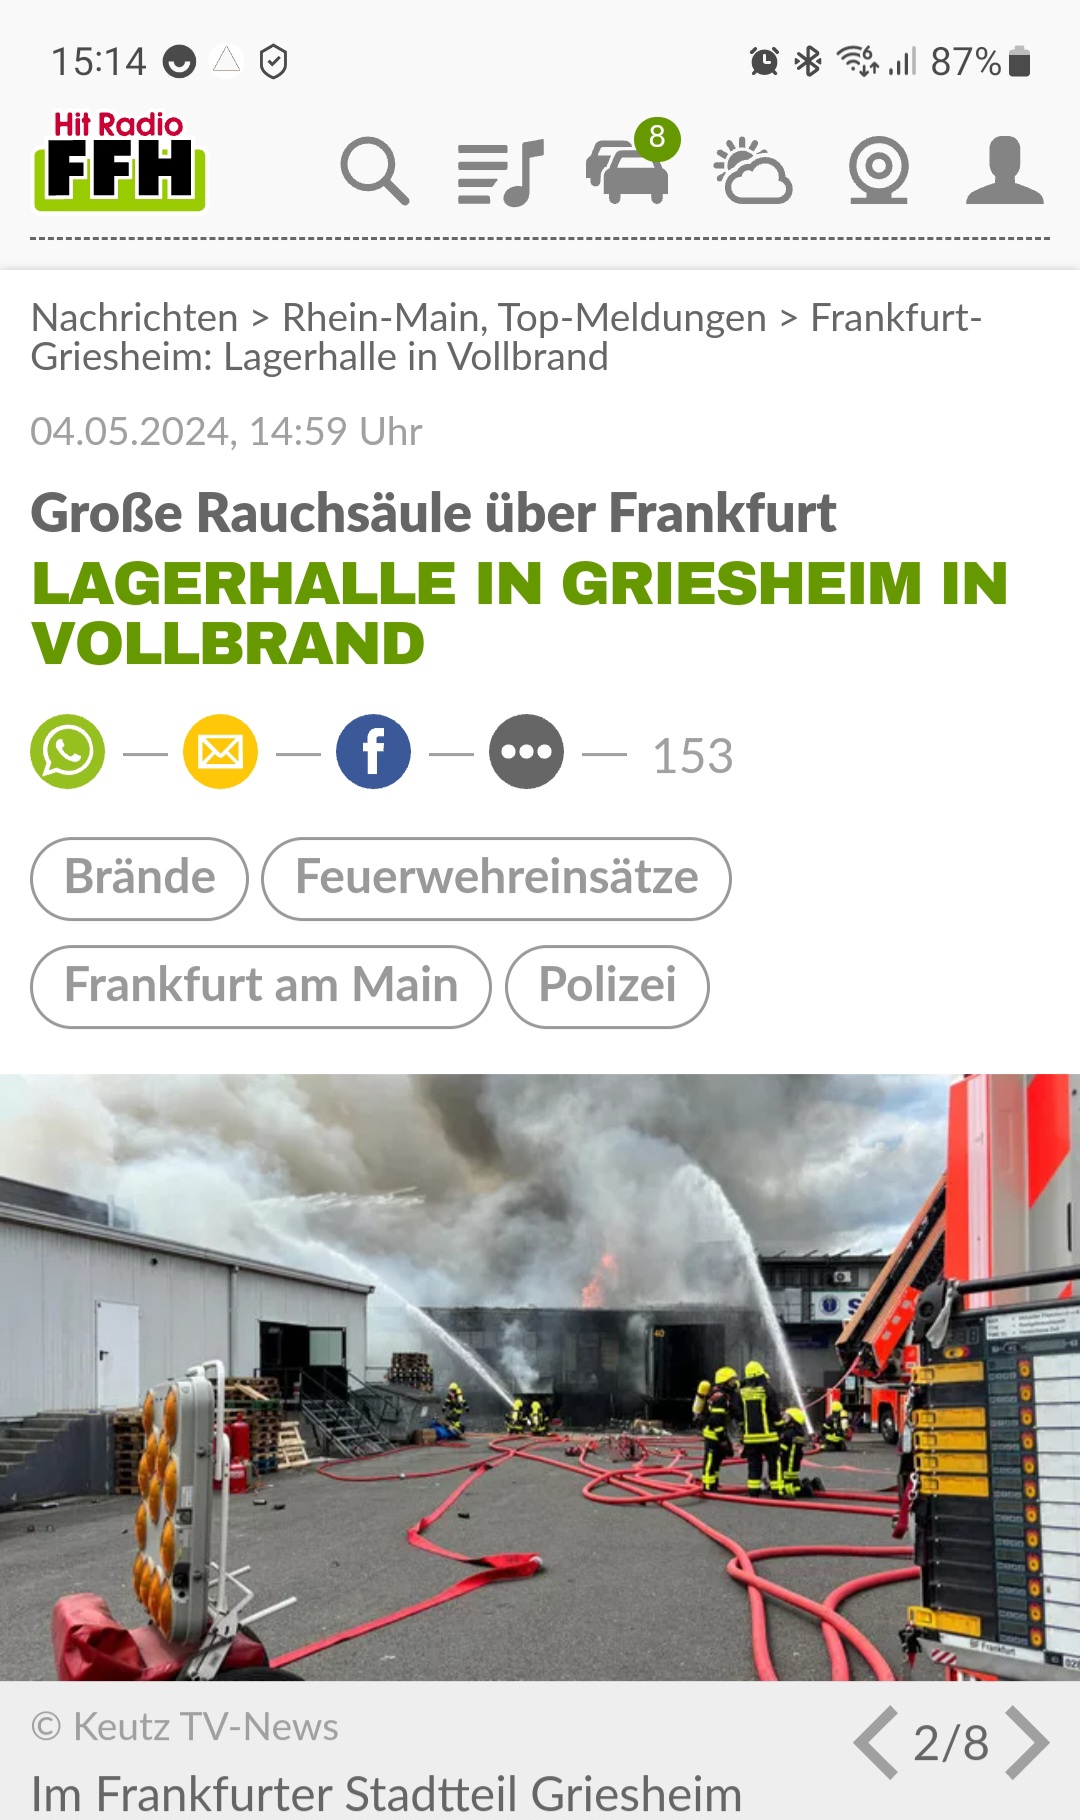 Lagerhallenbrand Griesheim Berichterstattung HIT RADIO FFH